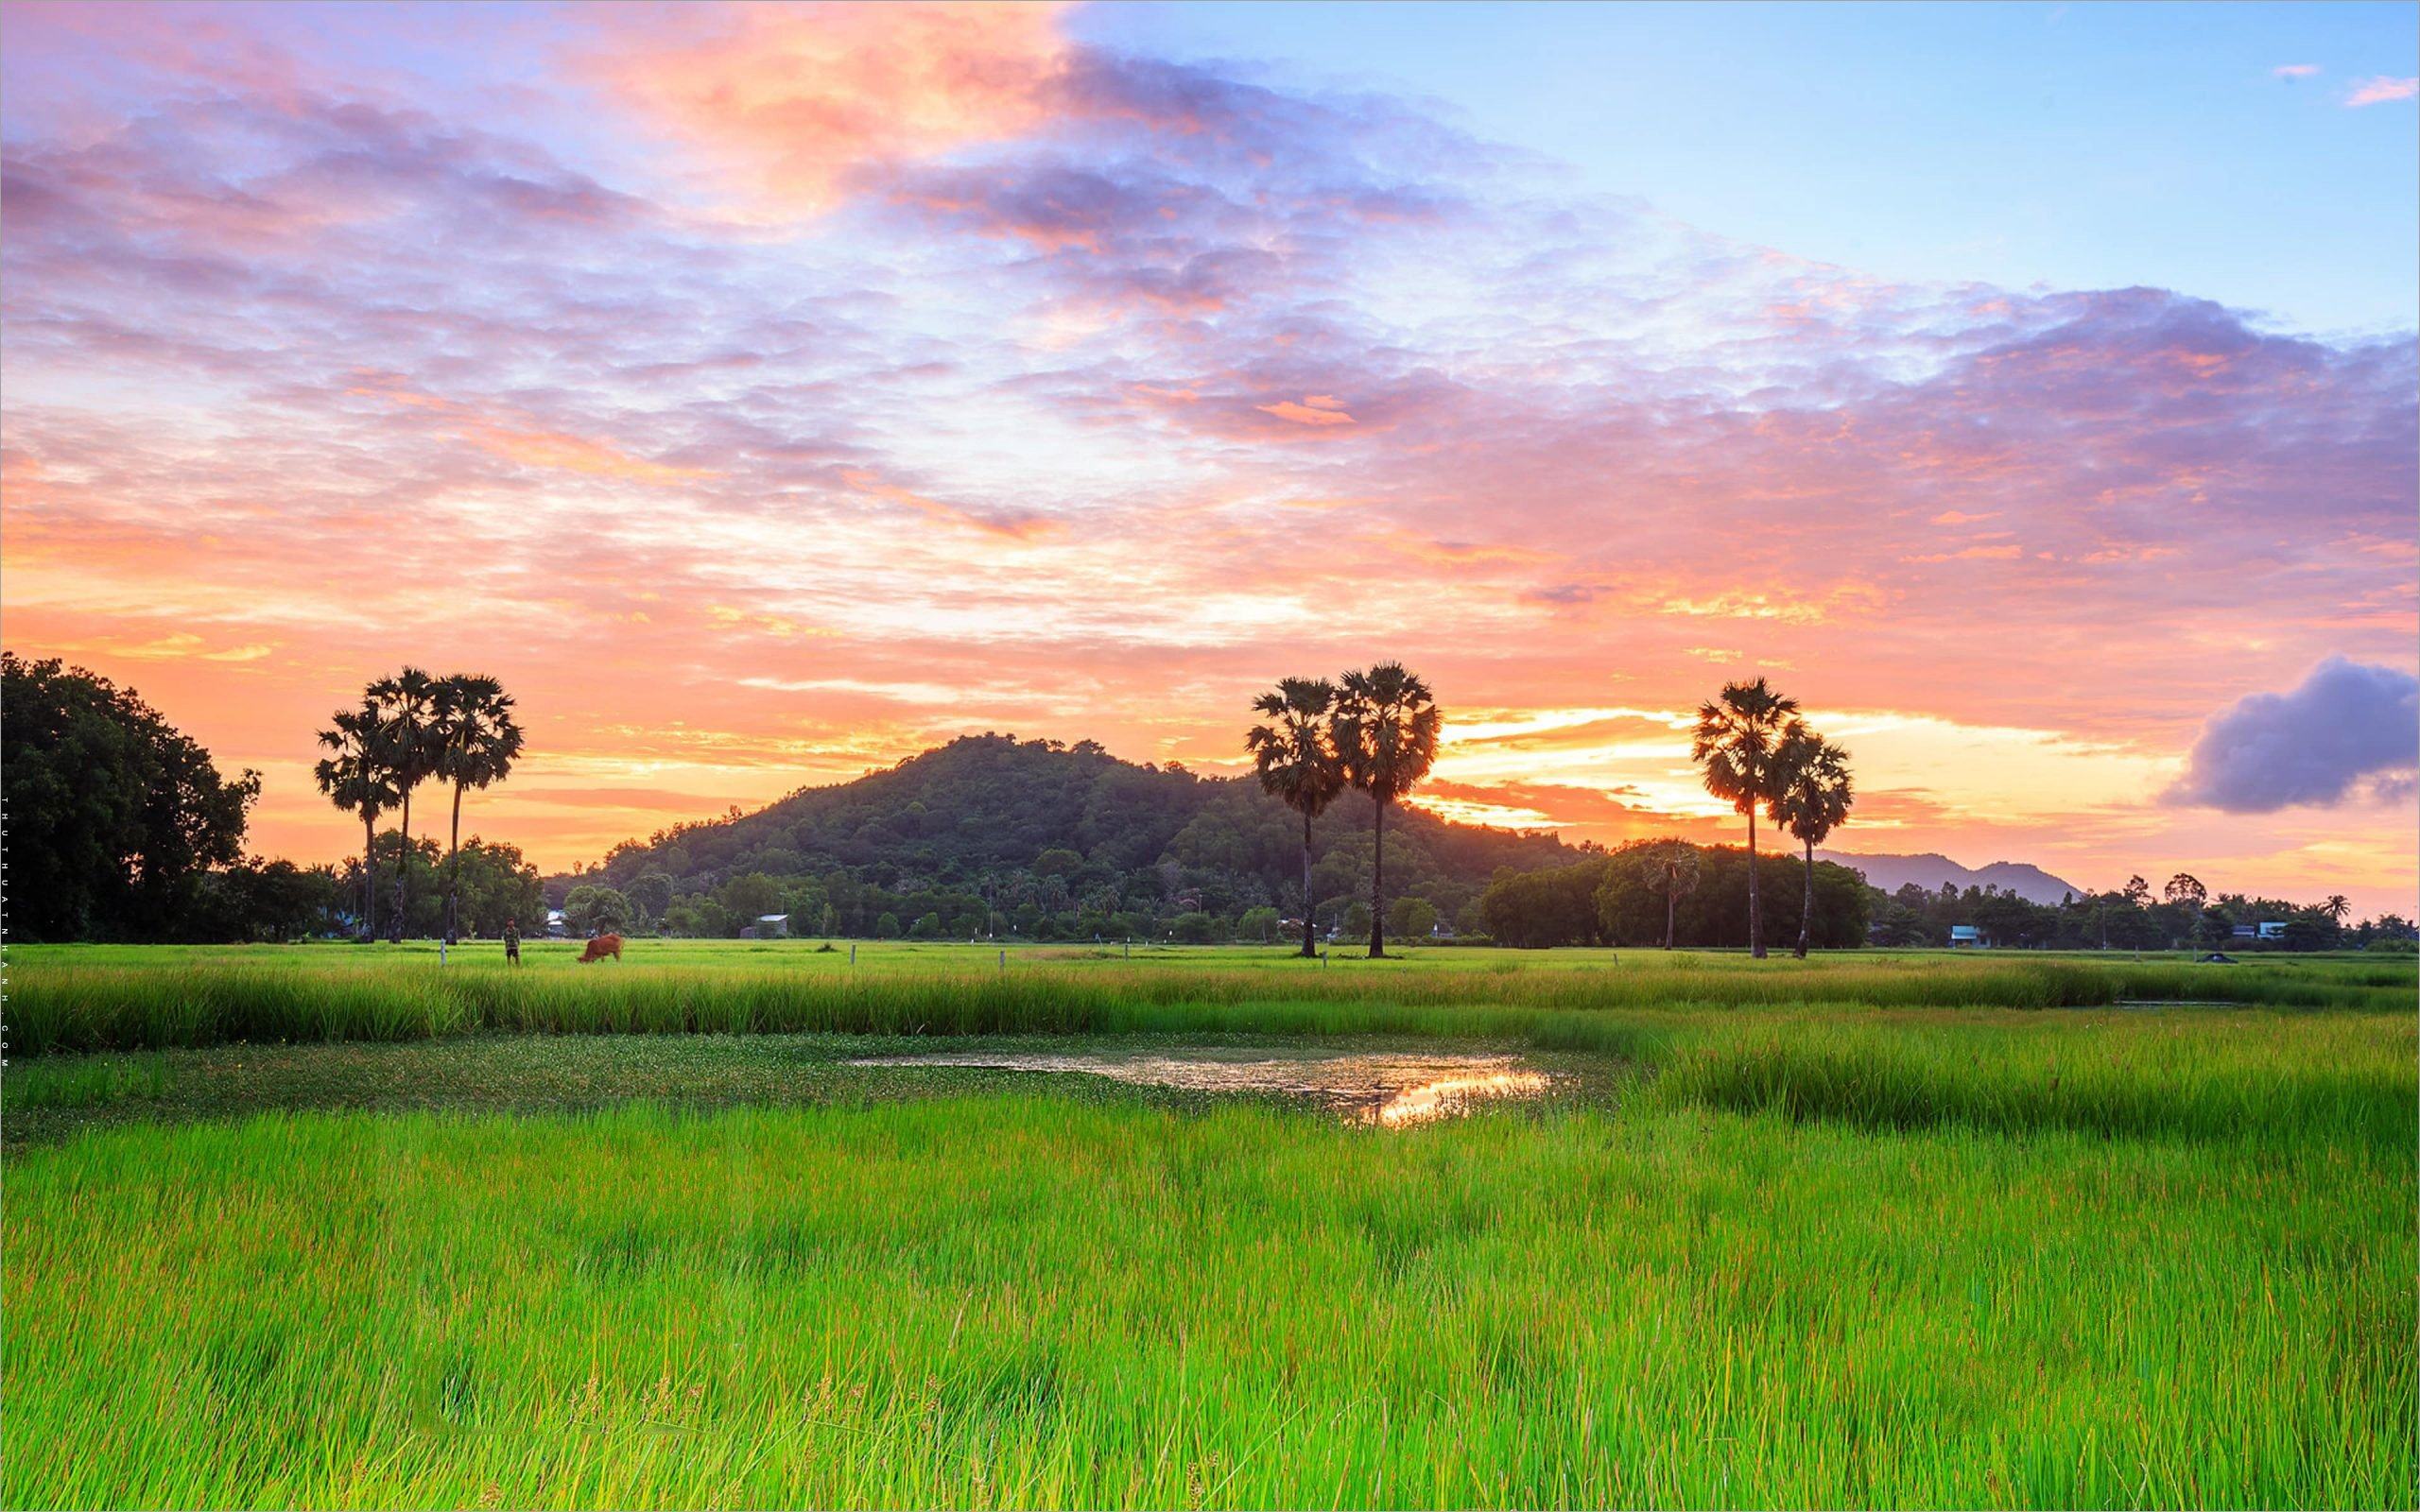 Hãy trang trí cho màn hình của mình những hình nền quê hương đẹp mắt nhất với những cánh đồng rộng lớn, những con đường lúa xanh ngắt và những bức tranh về cuộc sống người Việt trên đất mẹ.